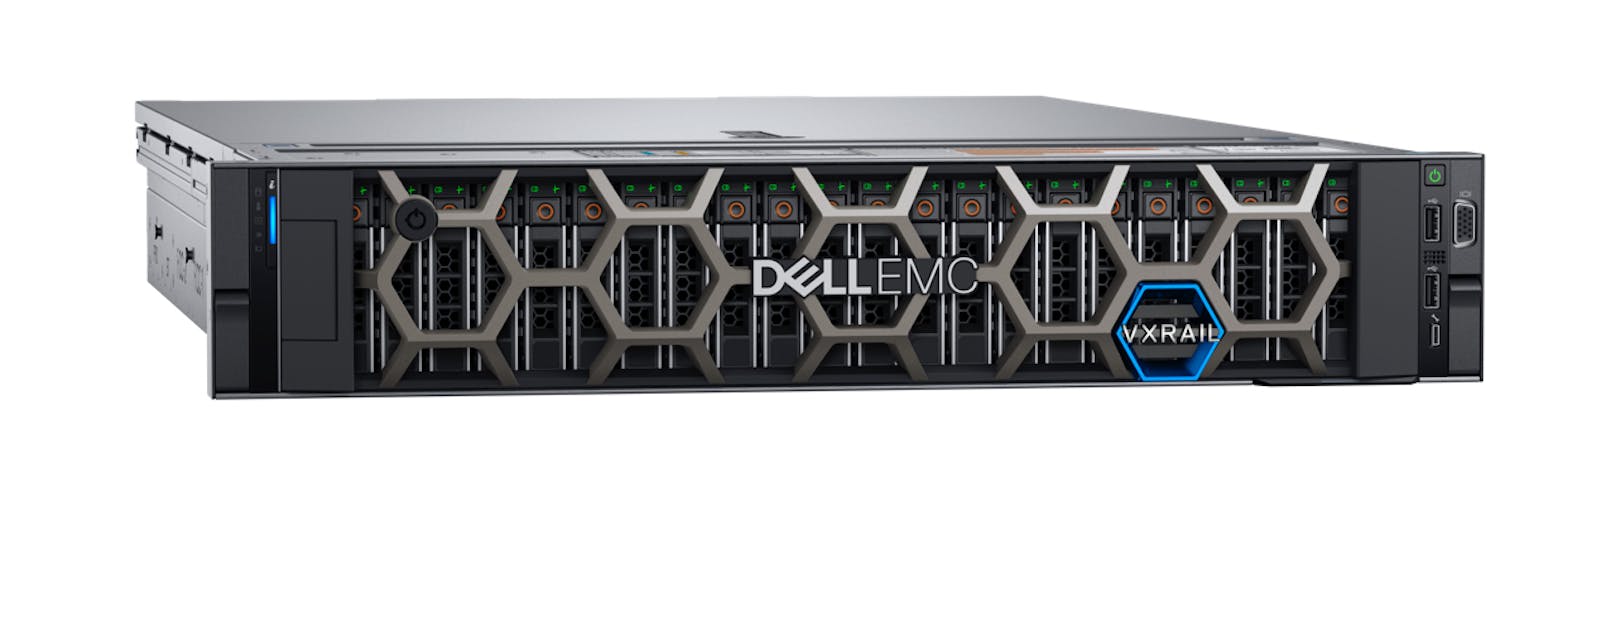 Dell Technologies: Neue VxRail-Systeme für anspruchsvolle Edge-Umgebungen.